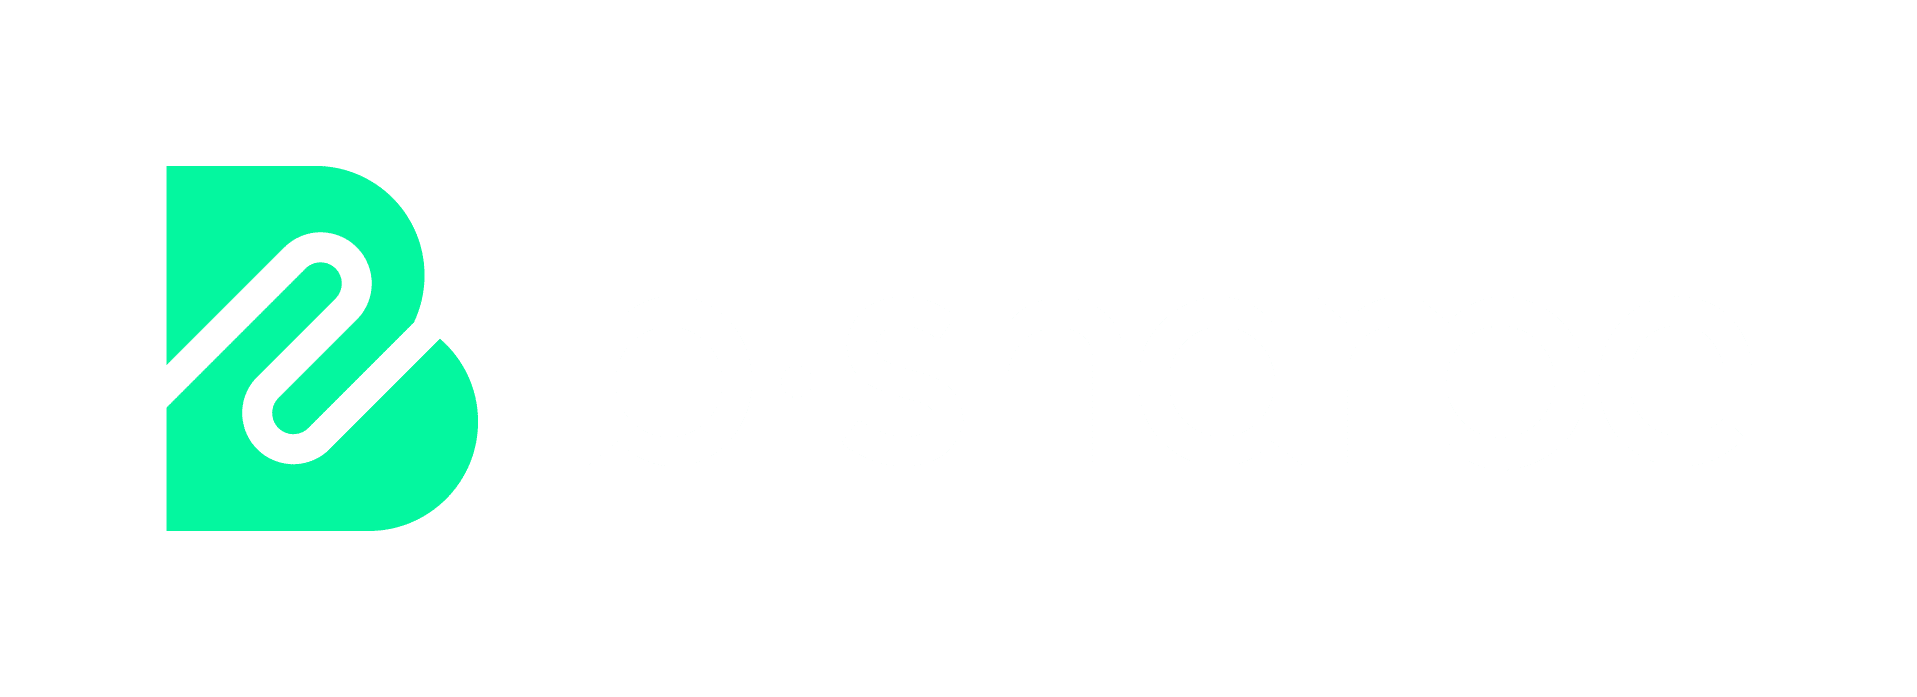 logo b-sharpe